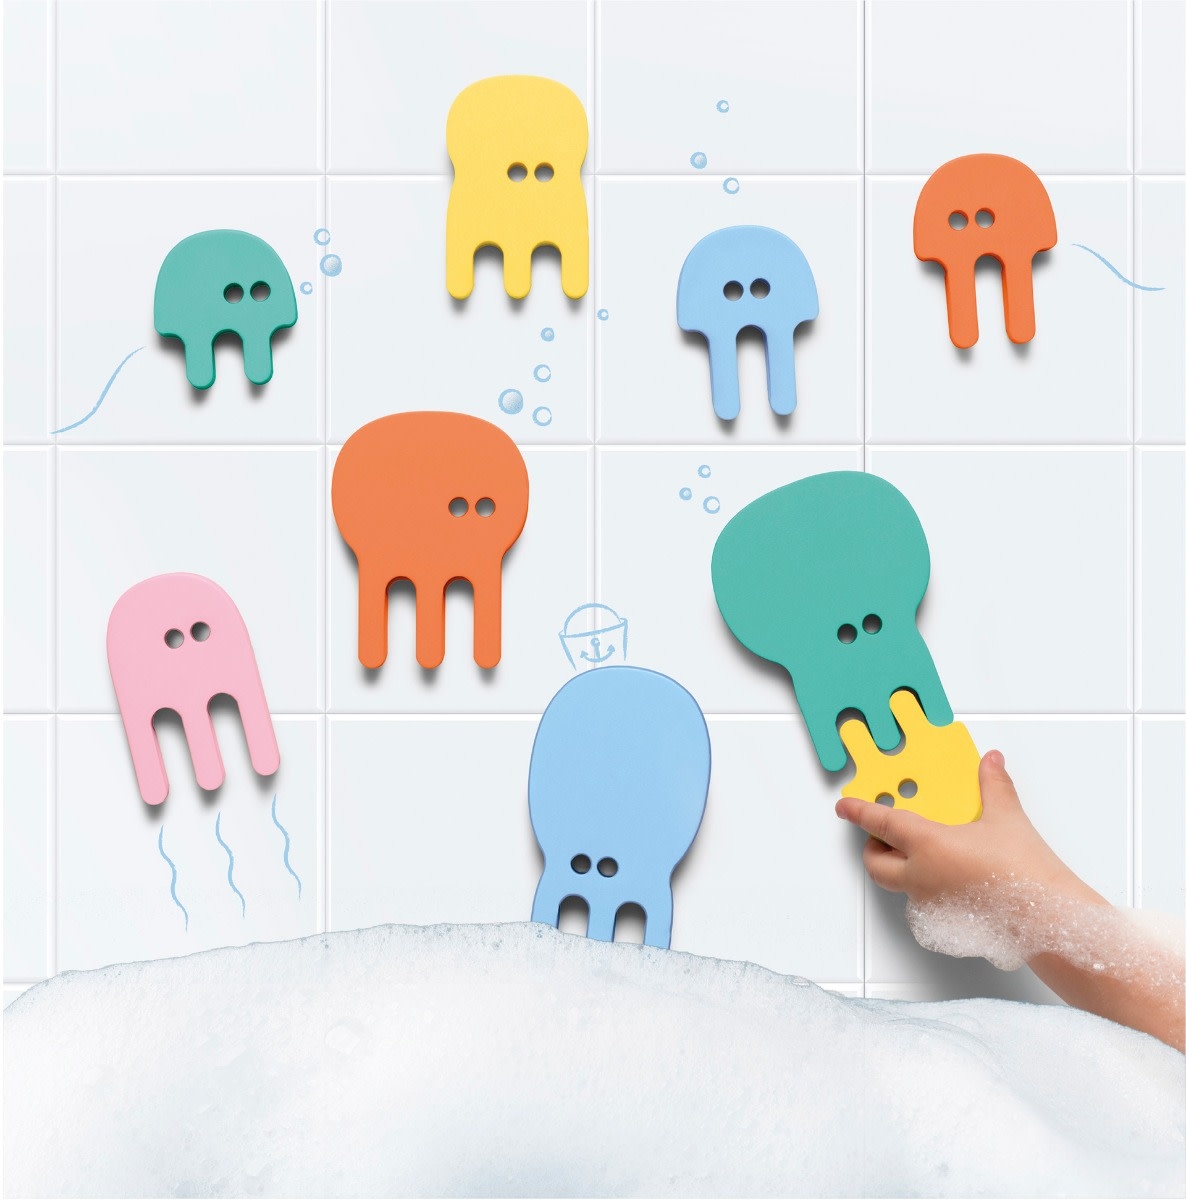 Quut Quut - Quutopia - Jellyfish Bath Puzzle